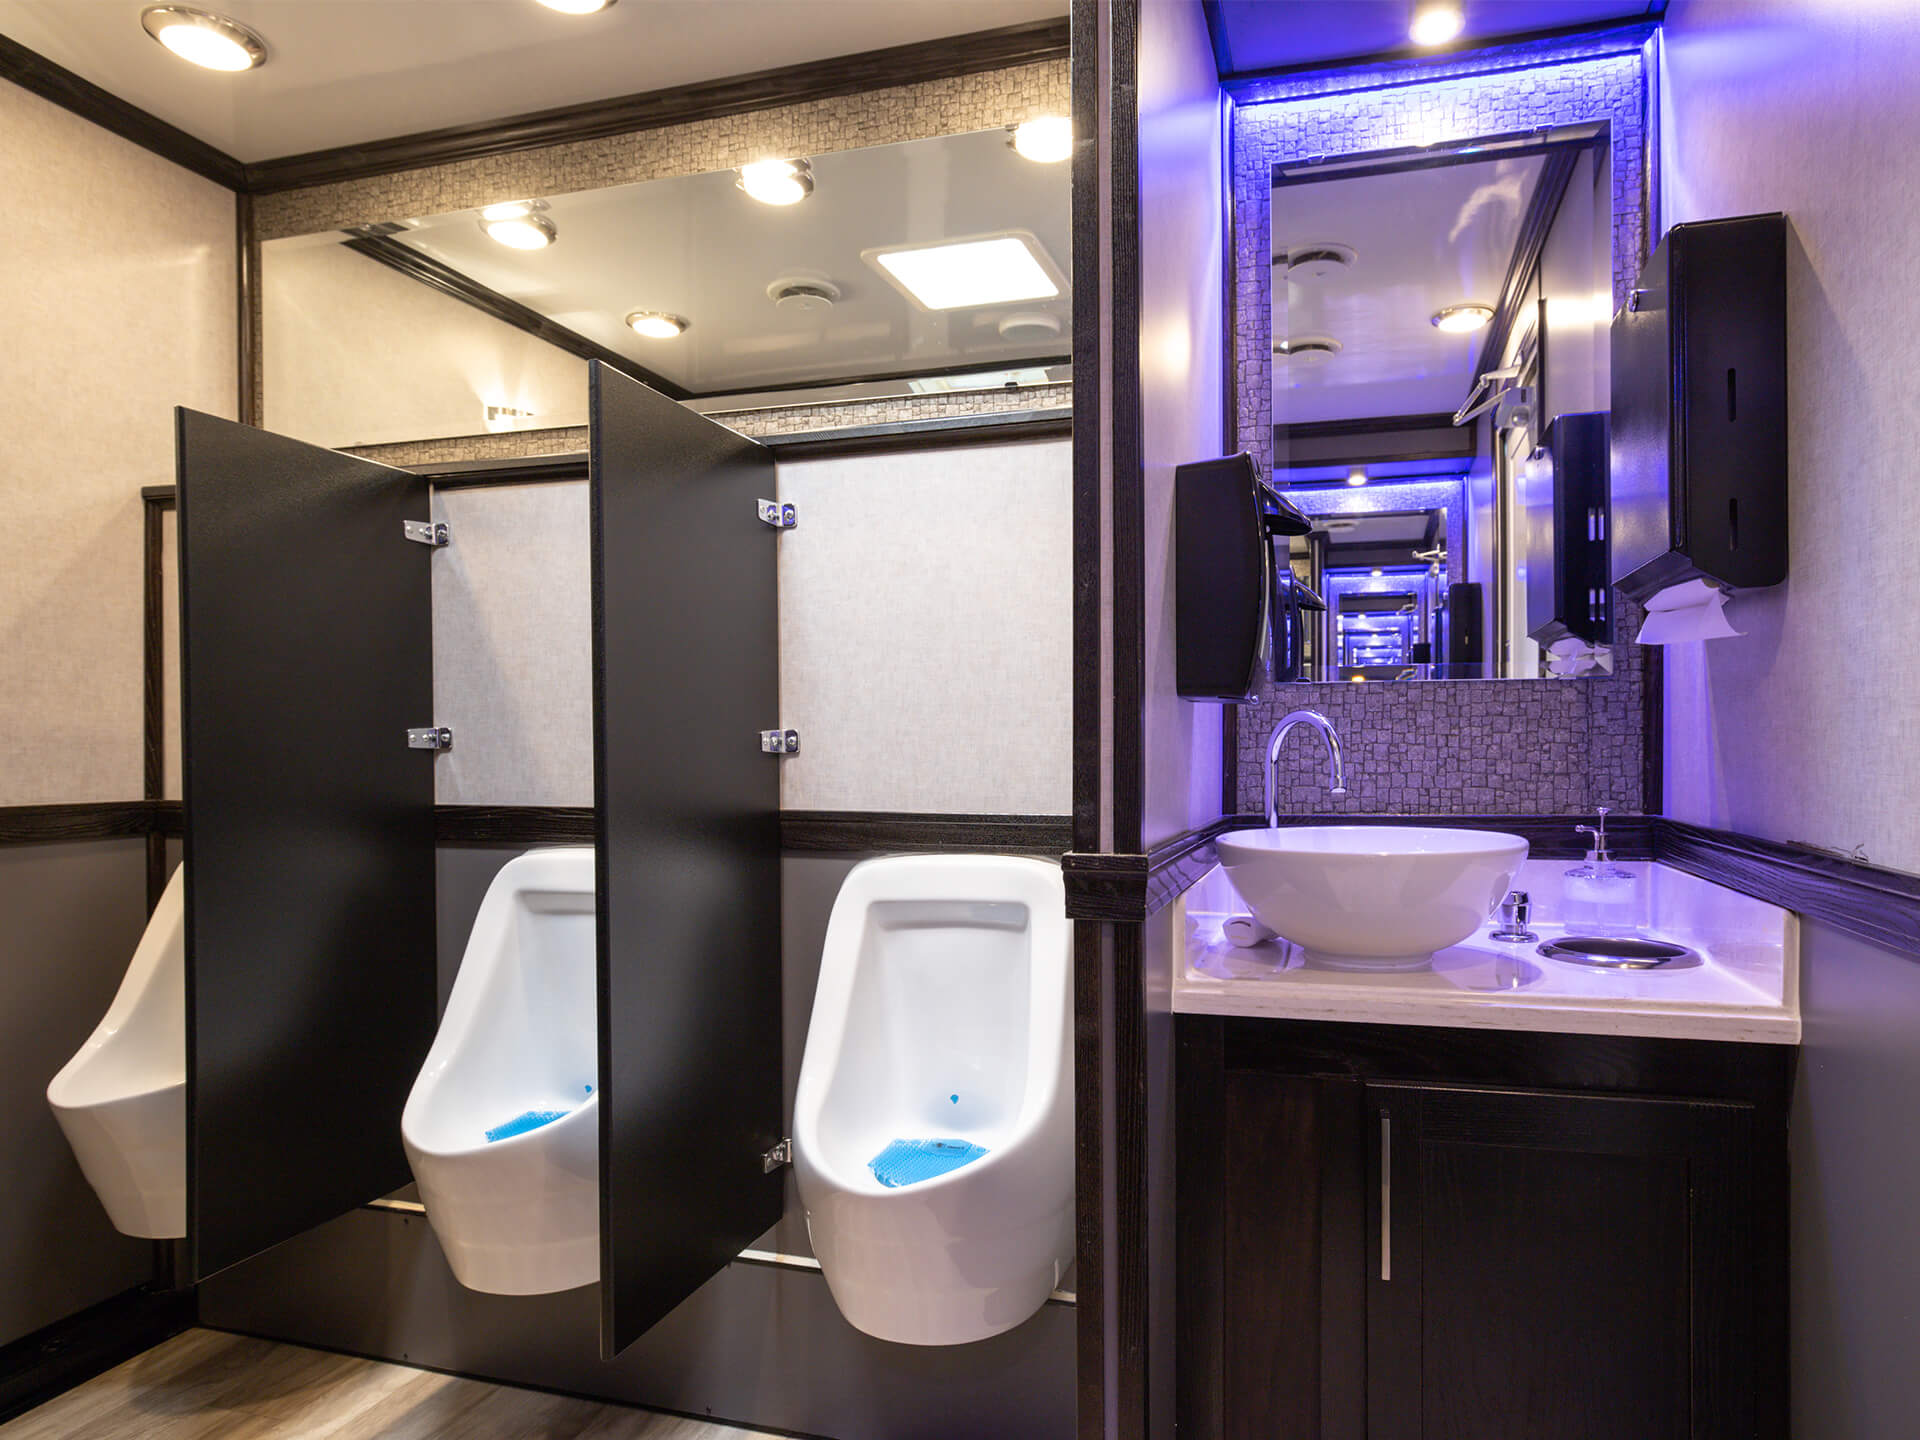 10 Station luxury restroom trailer interior 05